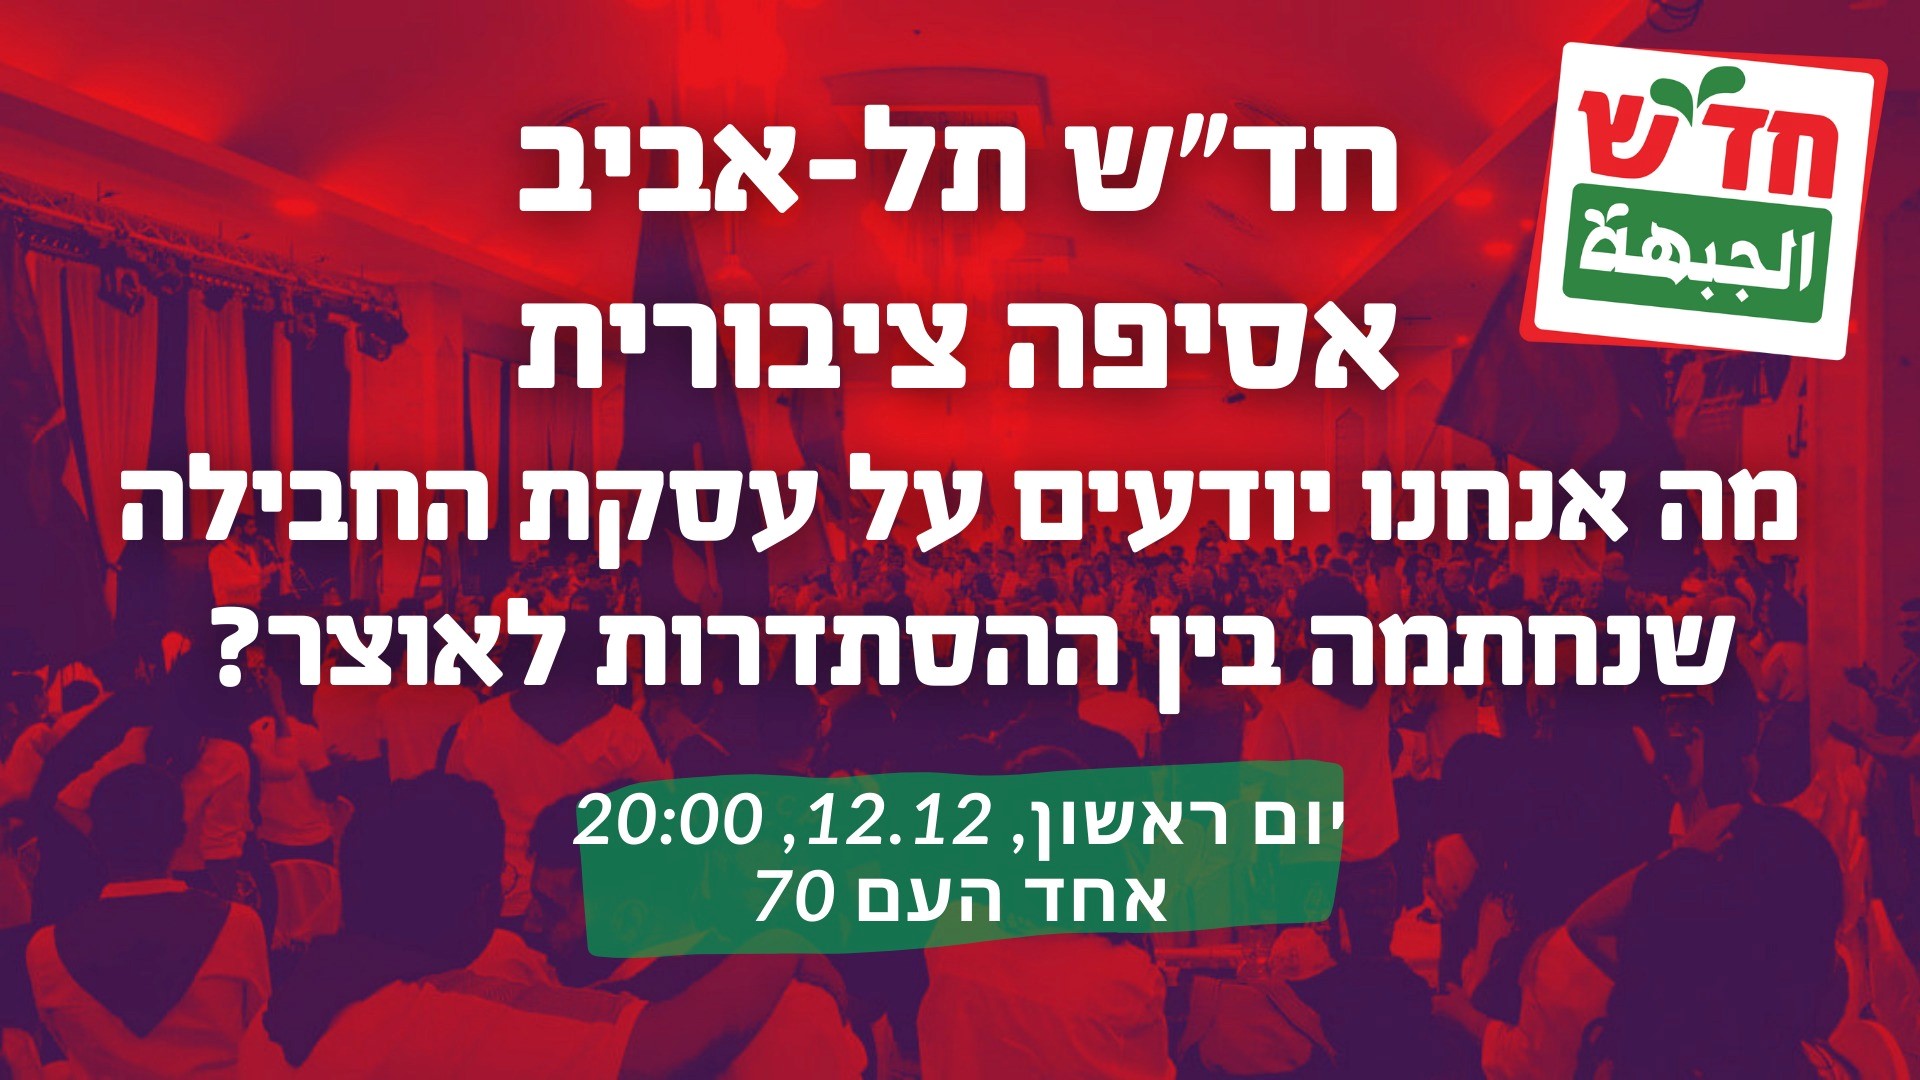 דיון ציבורי ראשון על עסקת החבילה והשלכותיה על העובדים ייערך בתל-אביב